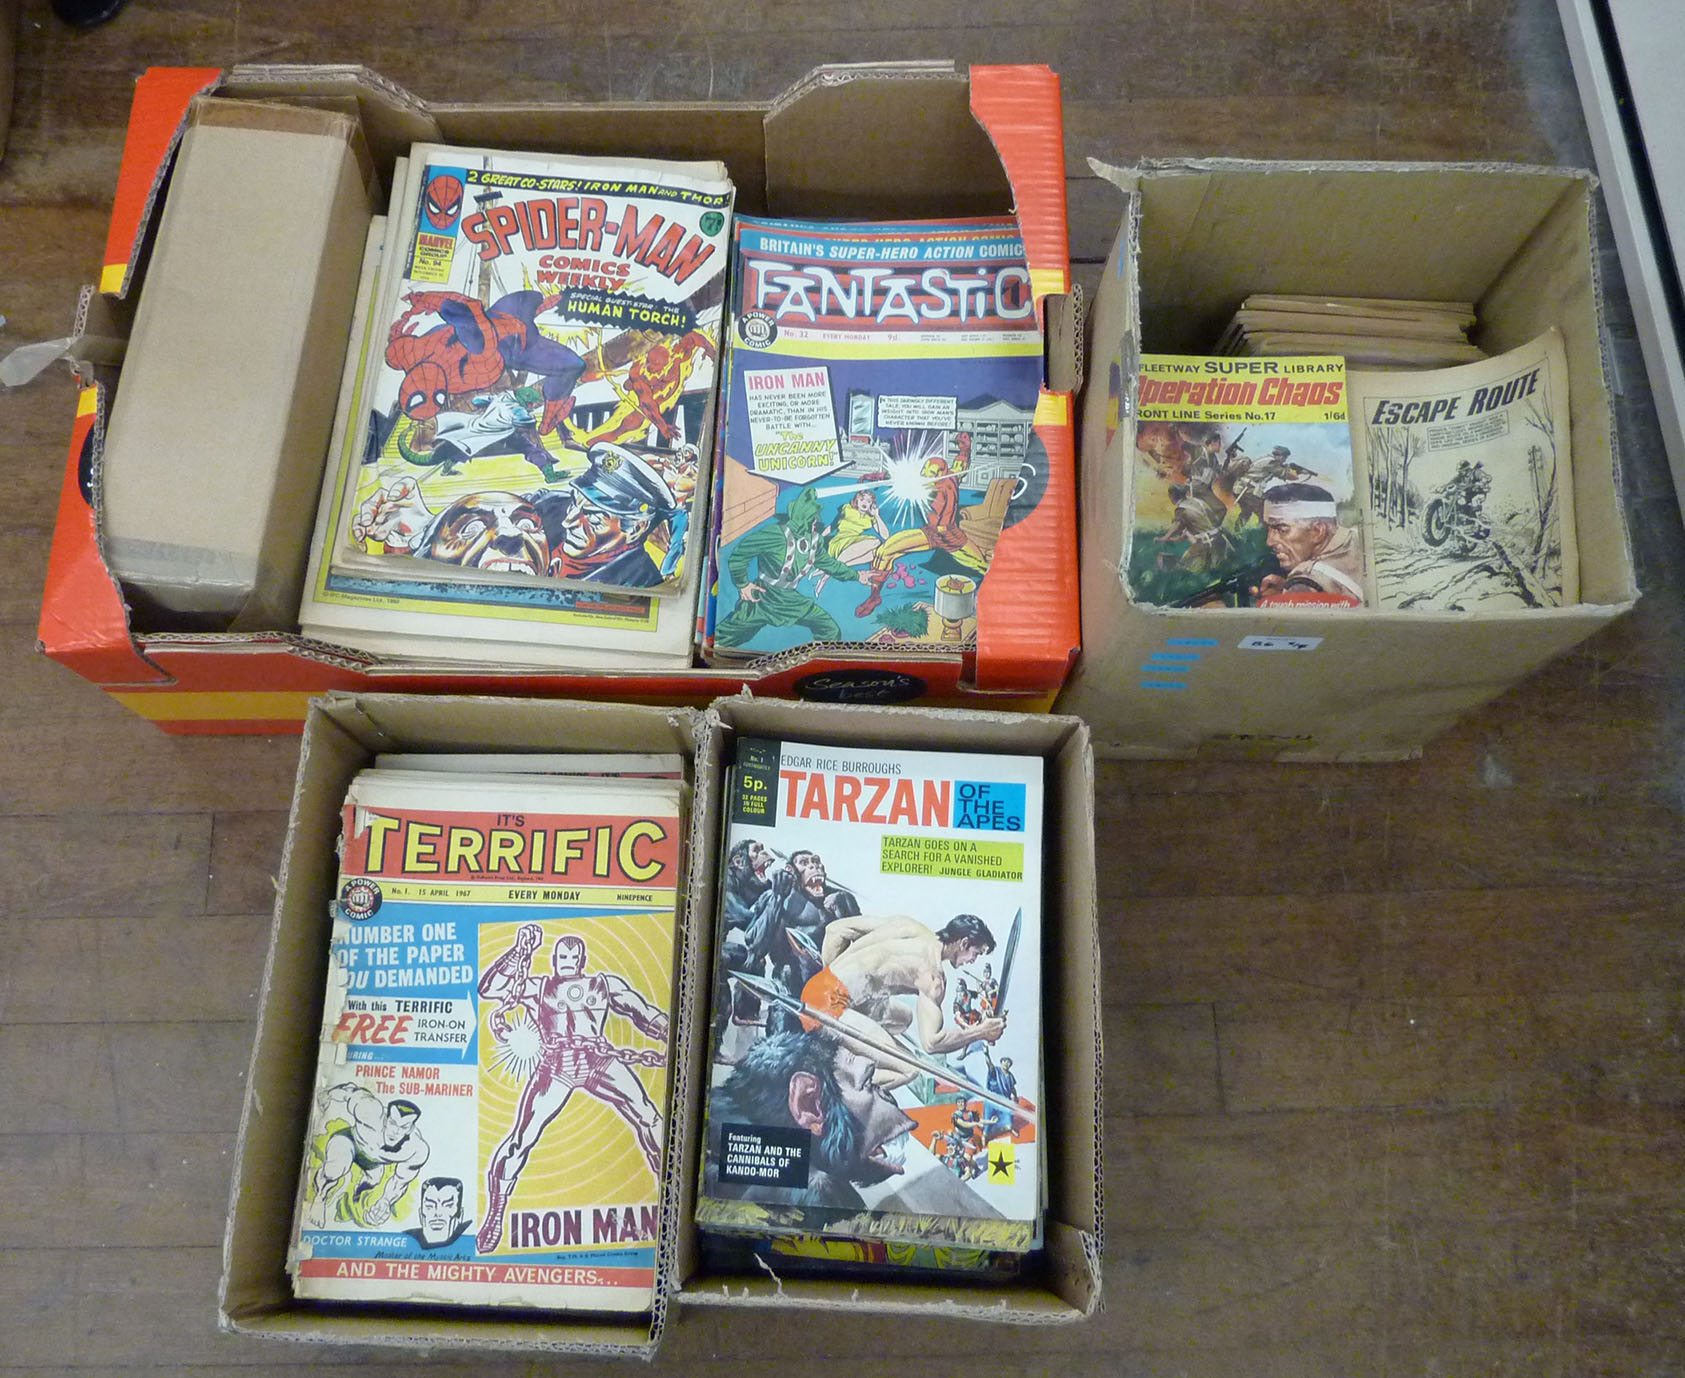 Quantity of comics and books, includes: Tarzan of the Apes; Terrific; Fantastic; Fleetway Super